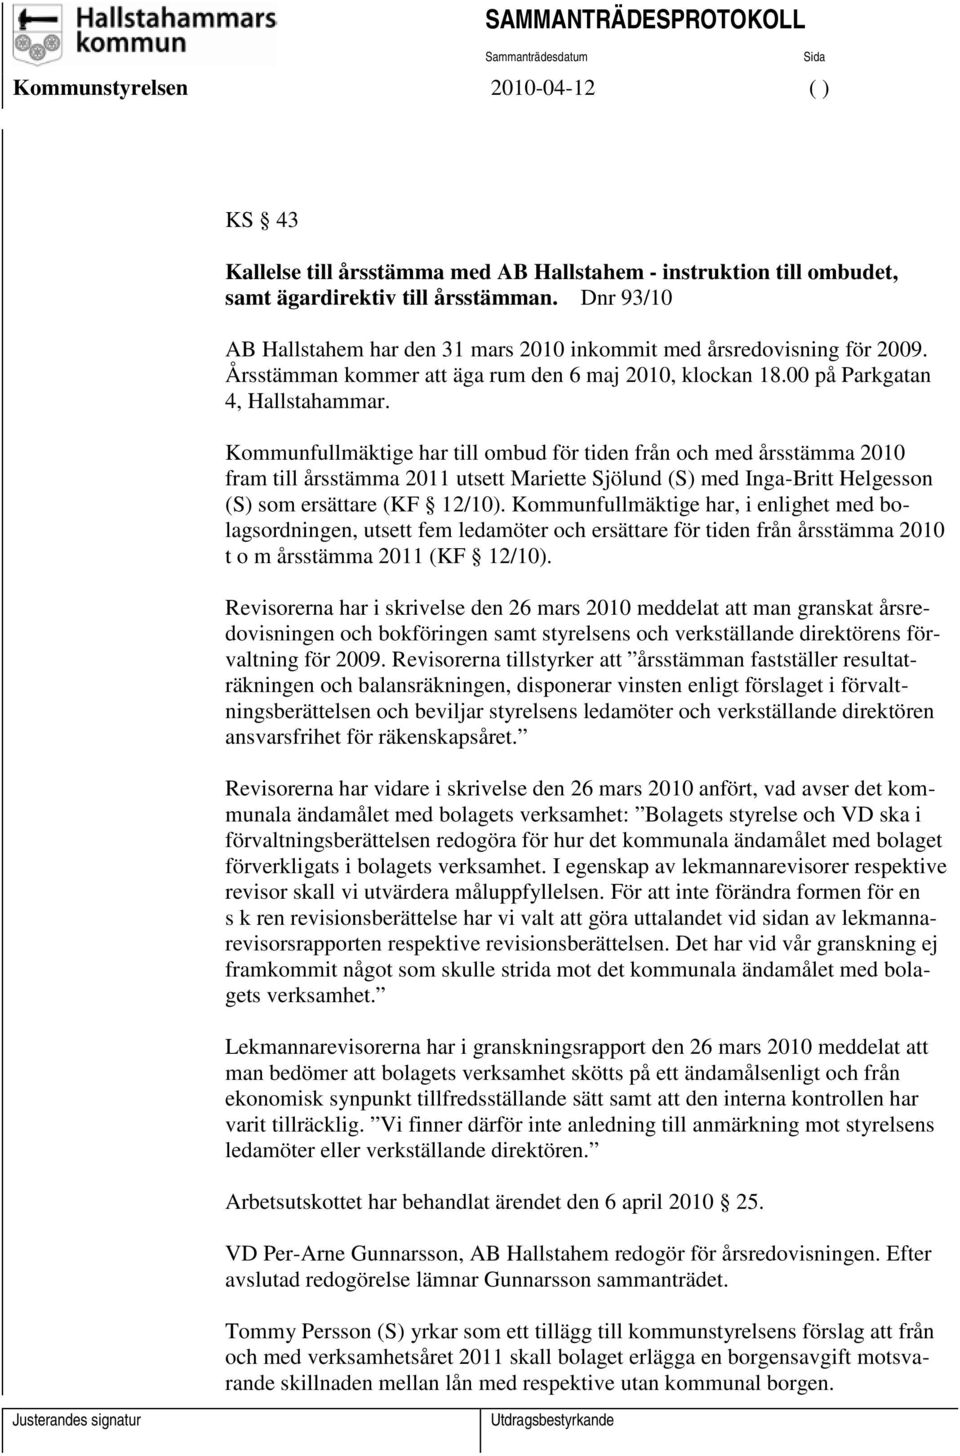 Kommunfullmäktige har till ombud för tiden från och med årsstämma 2010 fram till årsstämma 2011 utsett Mariette Sjölund (S) med Inga-Britt Helgesson (S) som ersättare (KF 12/10).